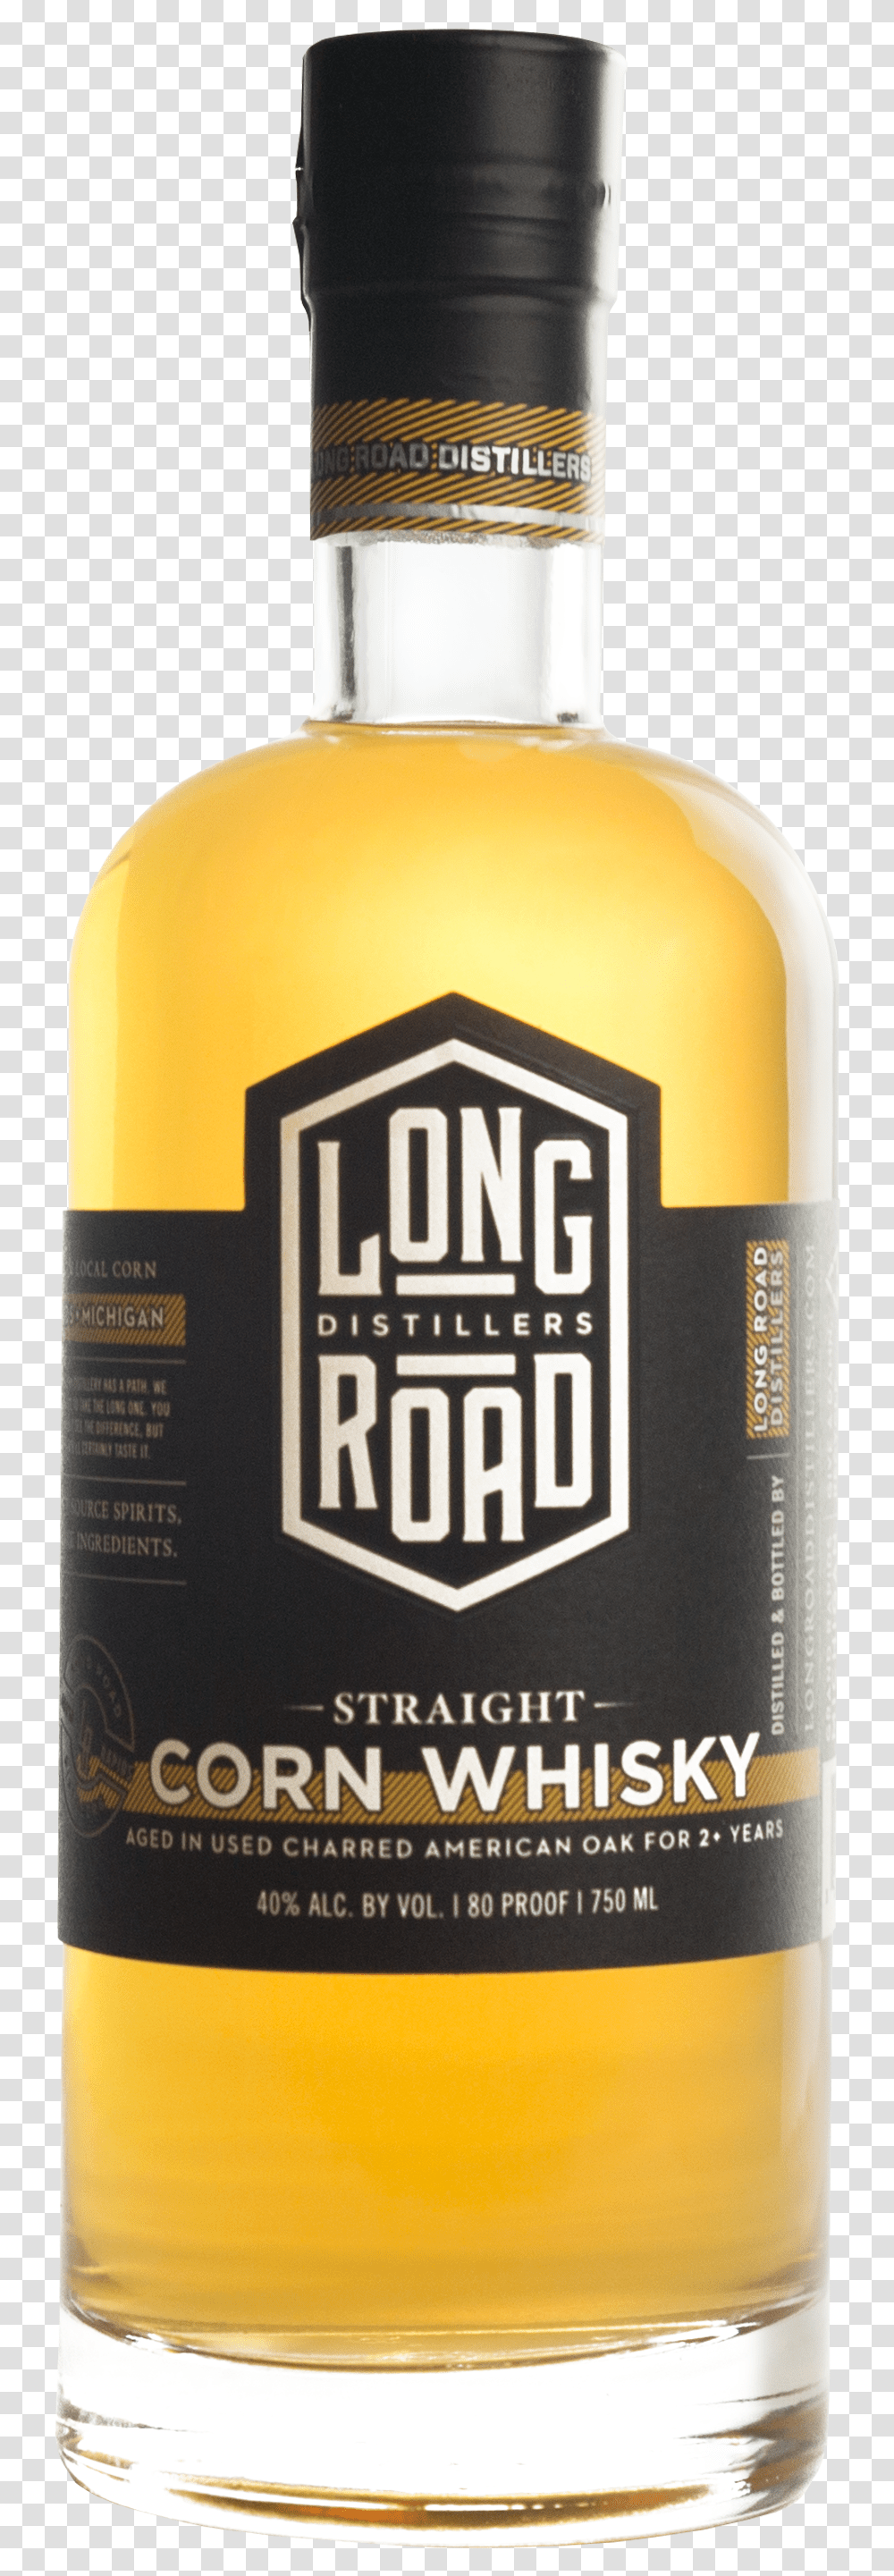 Straight Corn Whisky Long Road Distillers, Bottle, Alcohol, Beverage, Drink Transparent Png